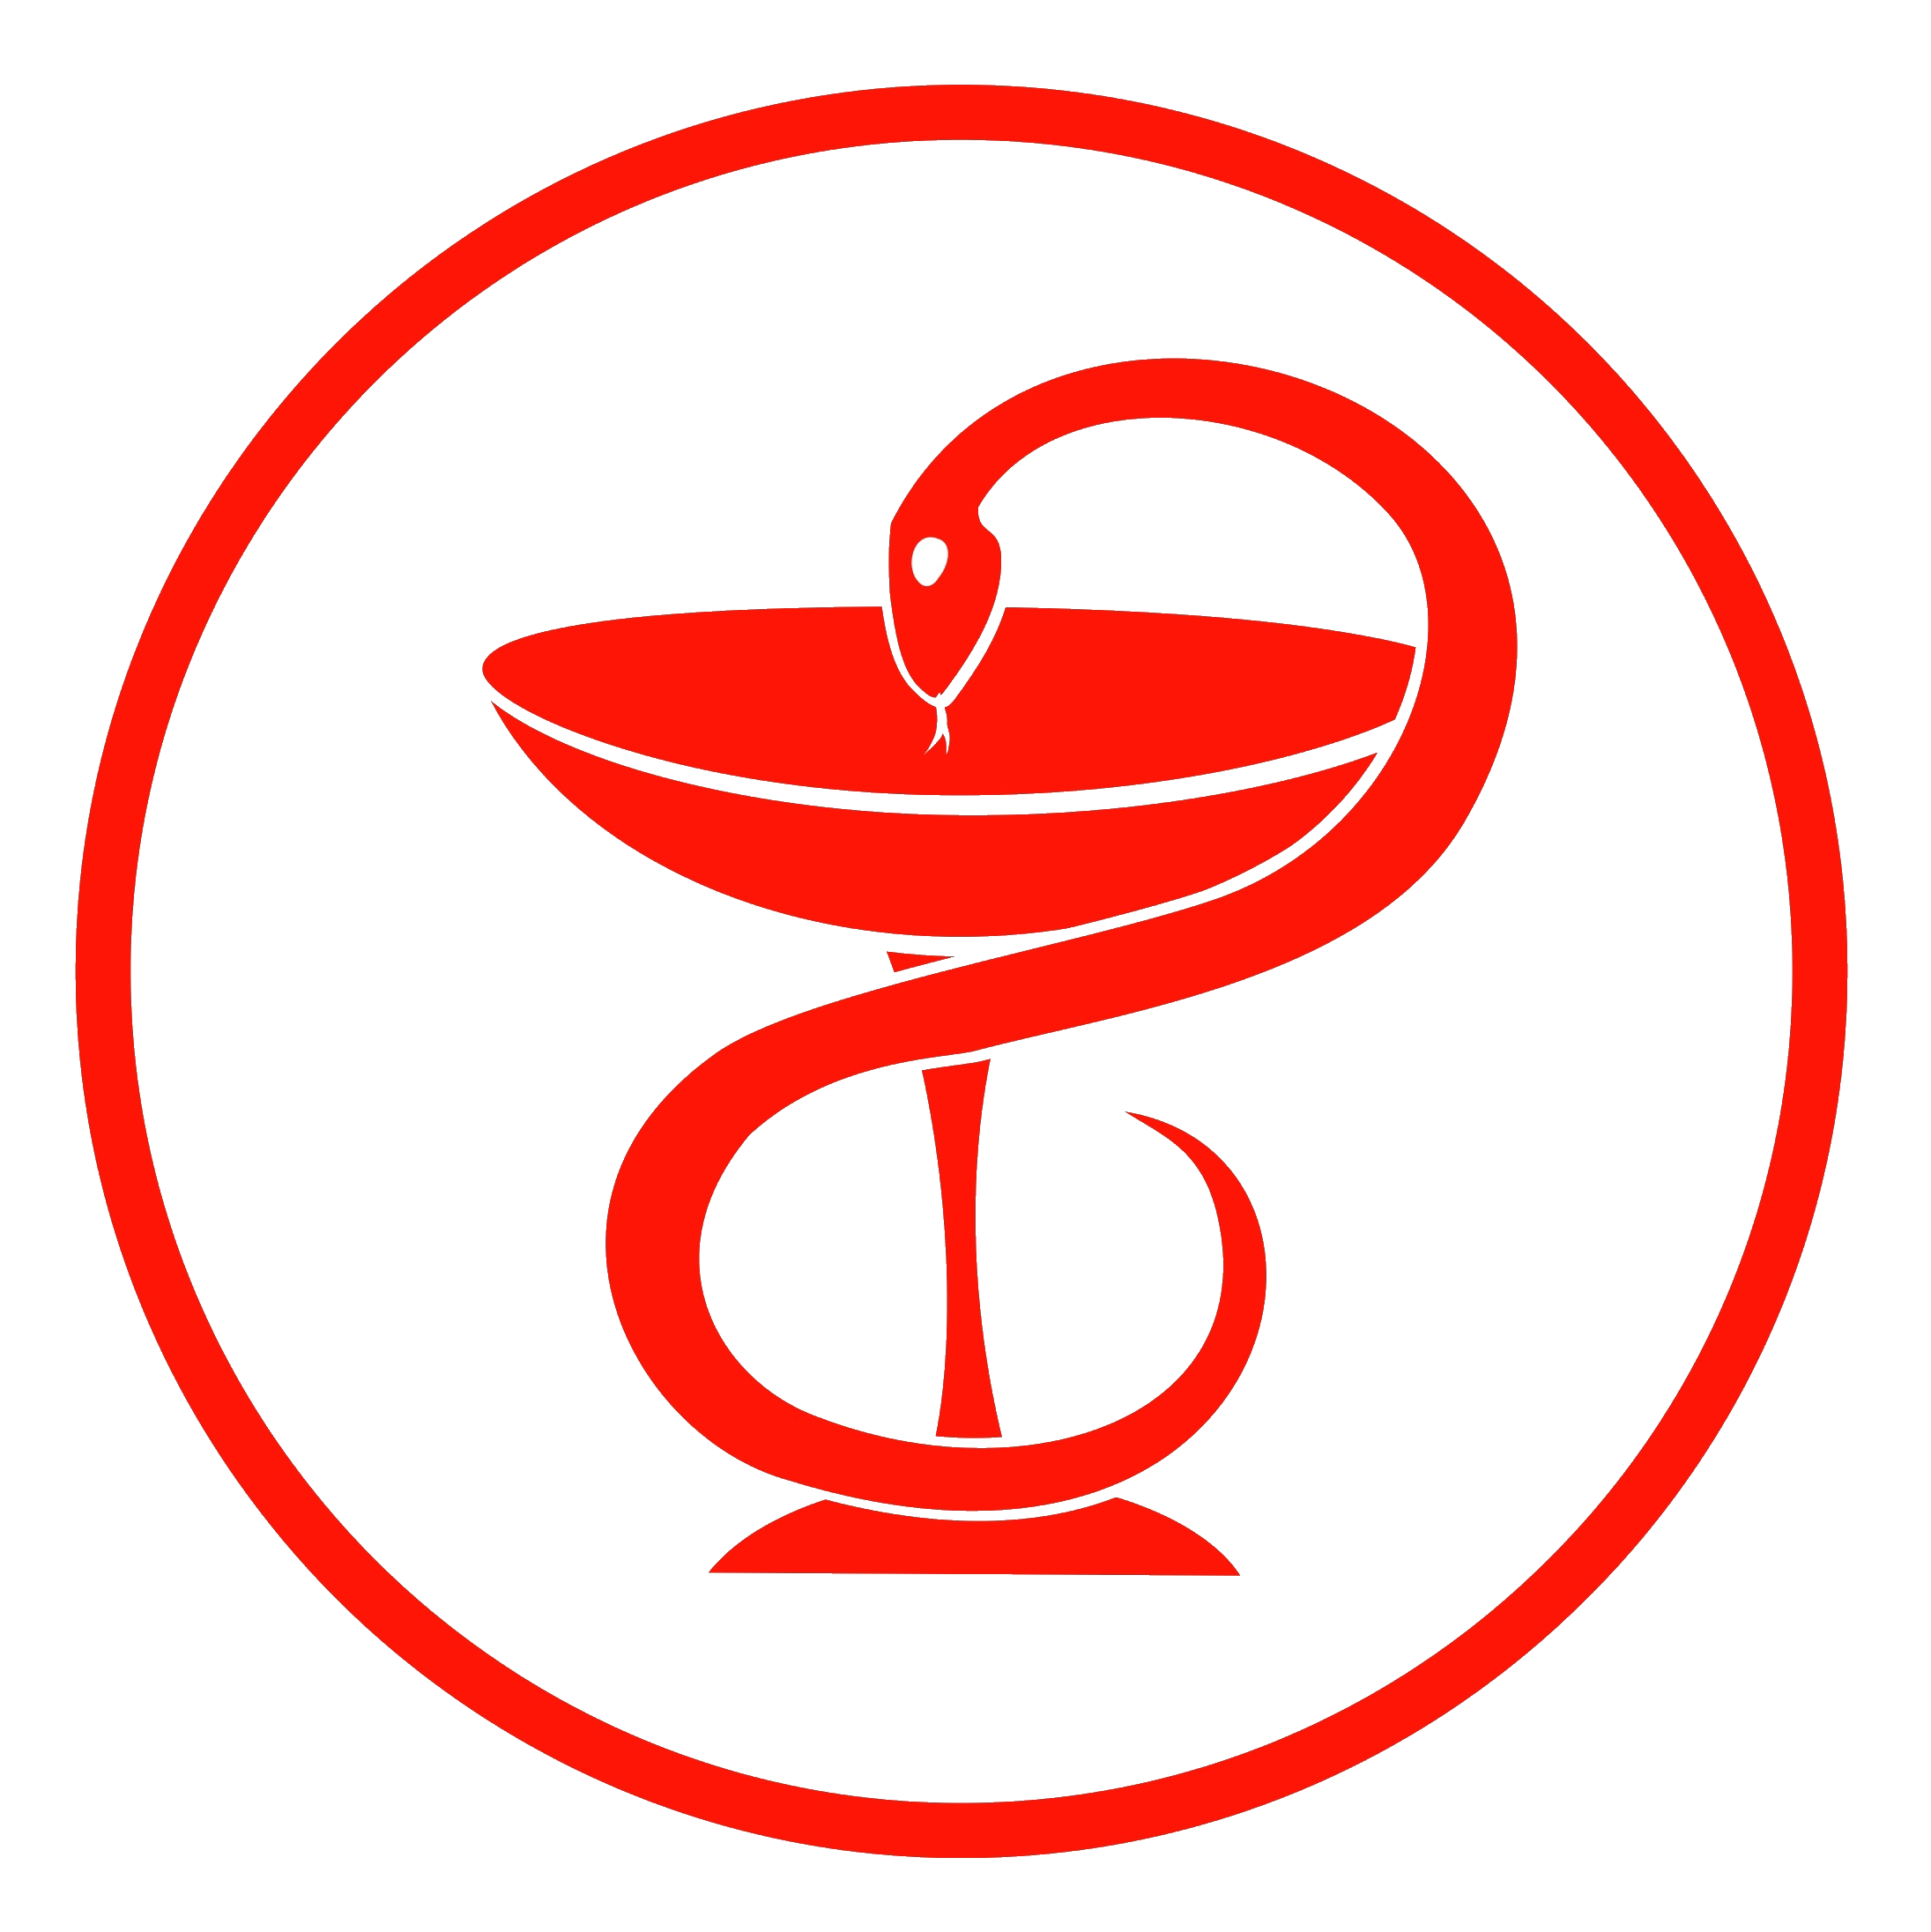 Медицинская эмблема. Символ медицины. Символ медицины чаша со змеей. Медицинская змея.